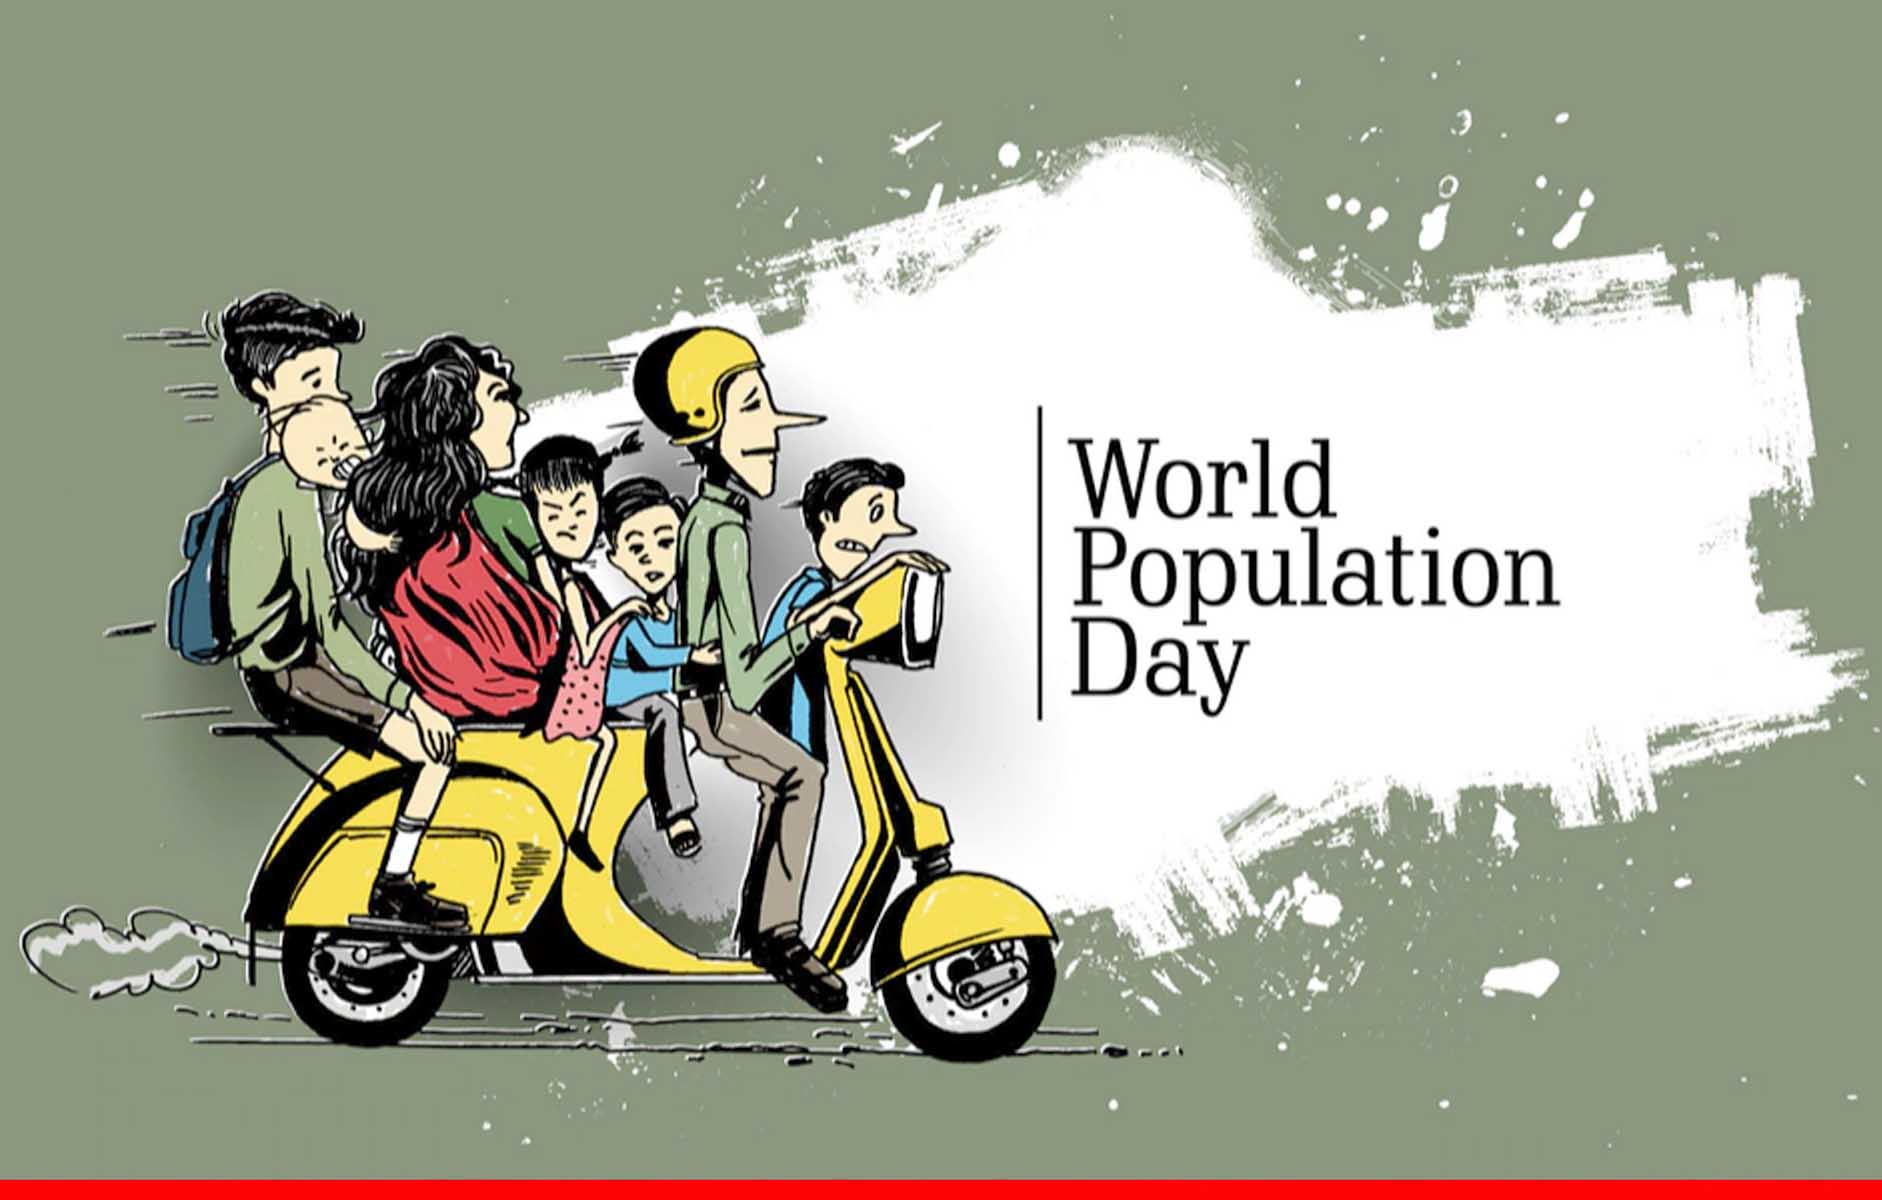 विश्व जनसंख्या दिवस आज: बढ़ती जनसंख्या से पैदा होने वाले संकट के प्रति लोगों को करें जागरुक